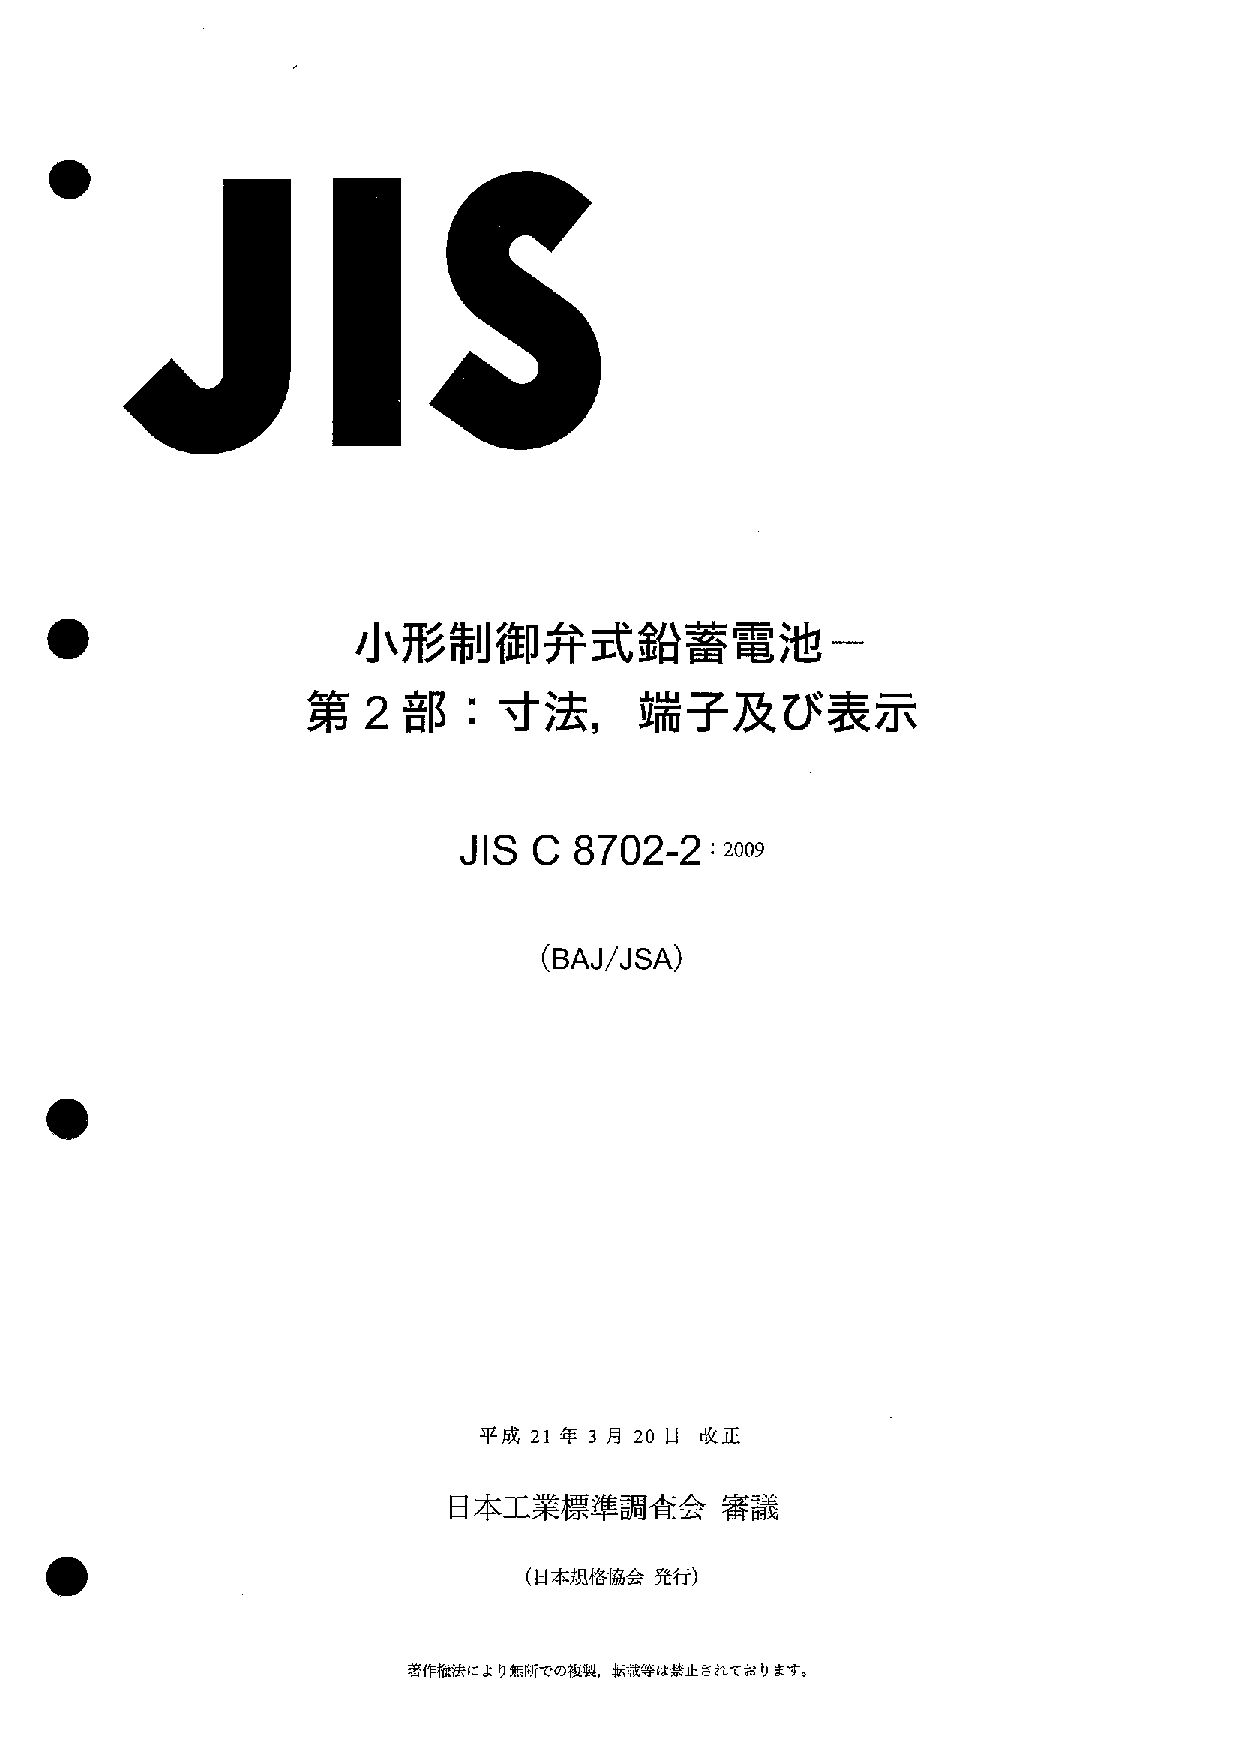 JIS C 8702-2:2009封面图